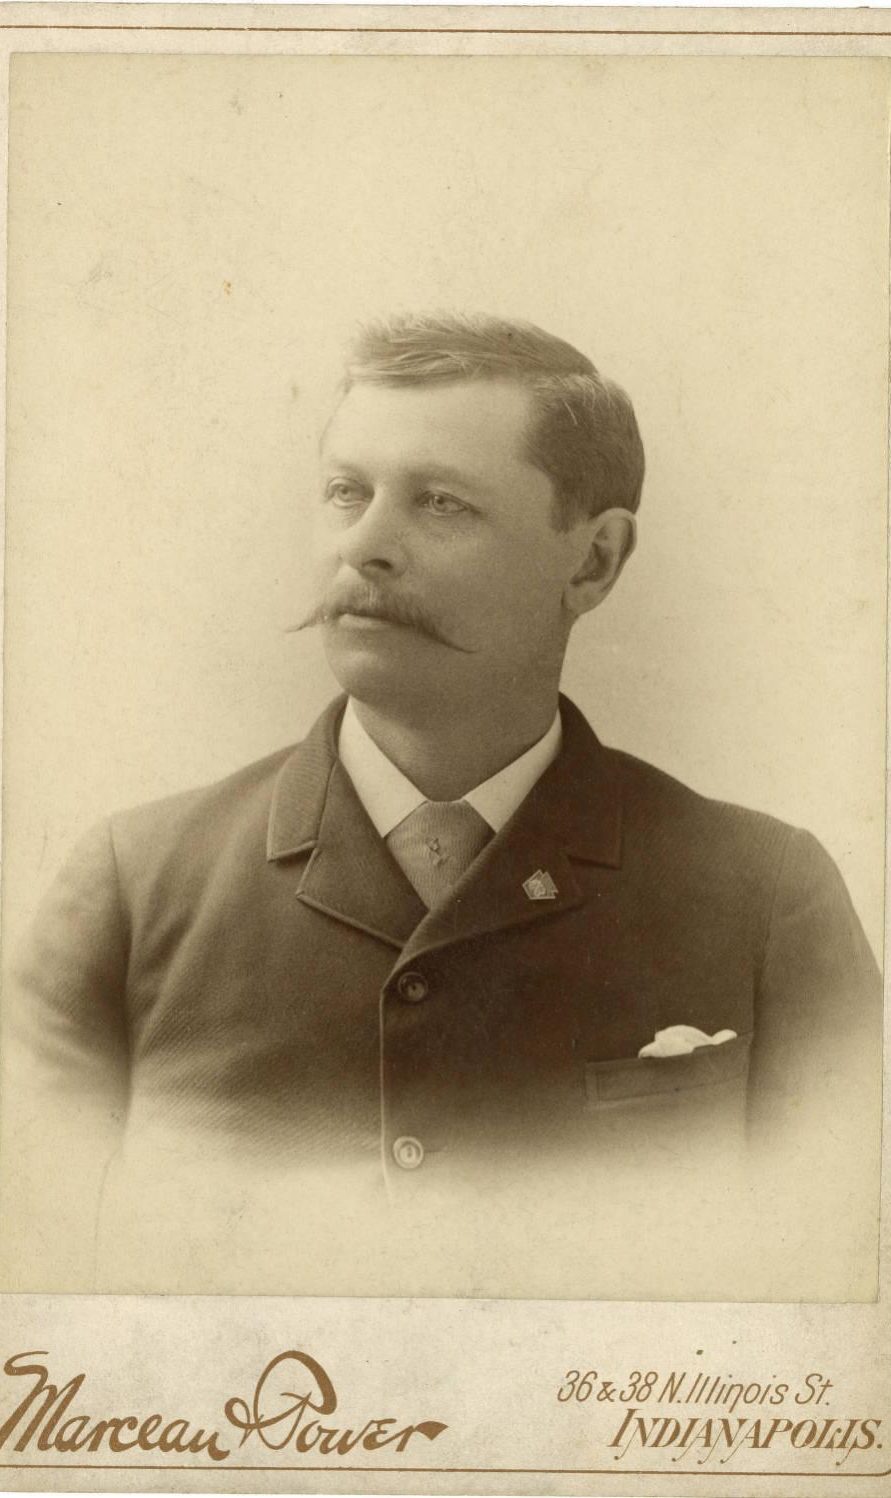 William P. Jungclaus